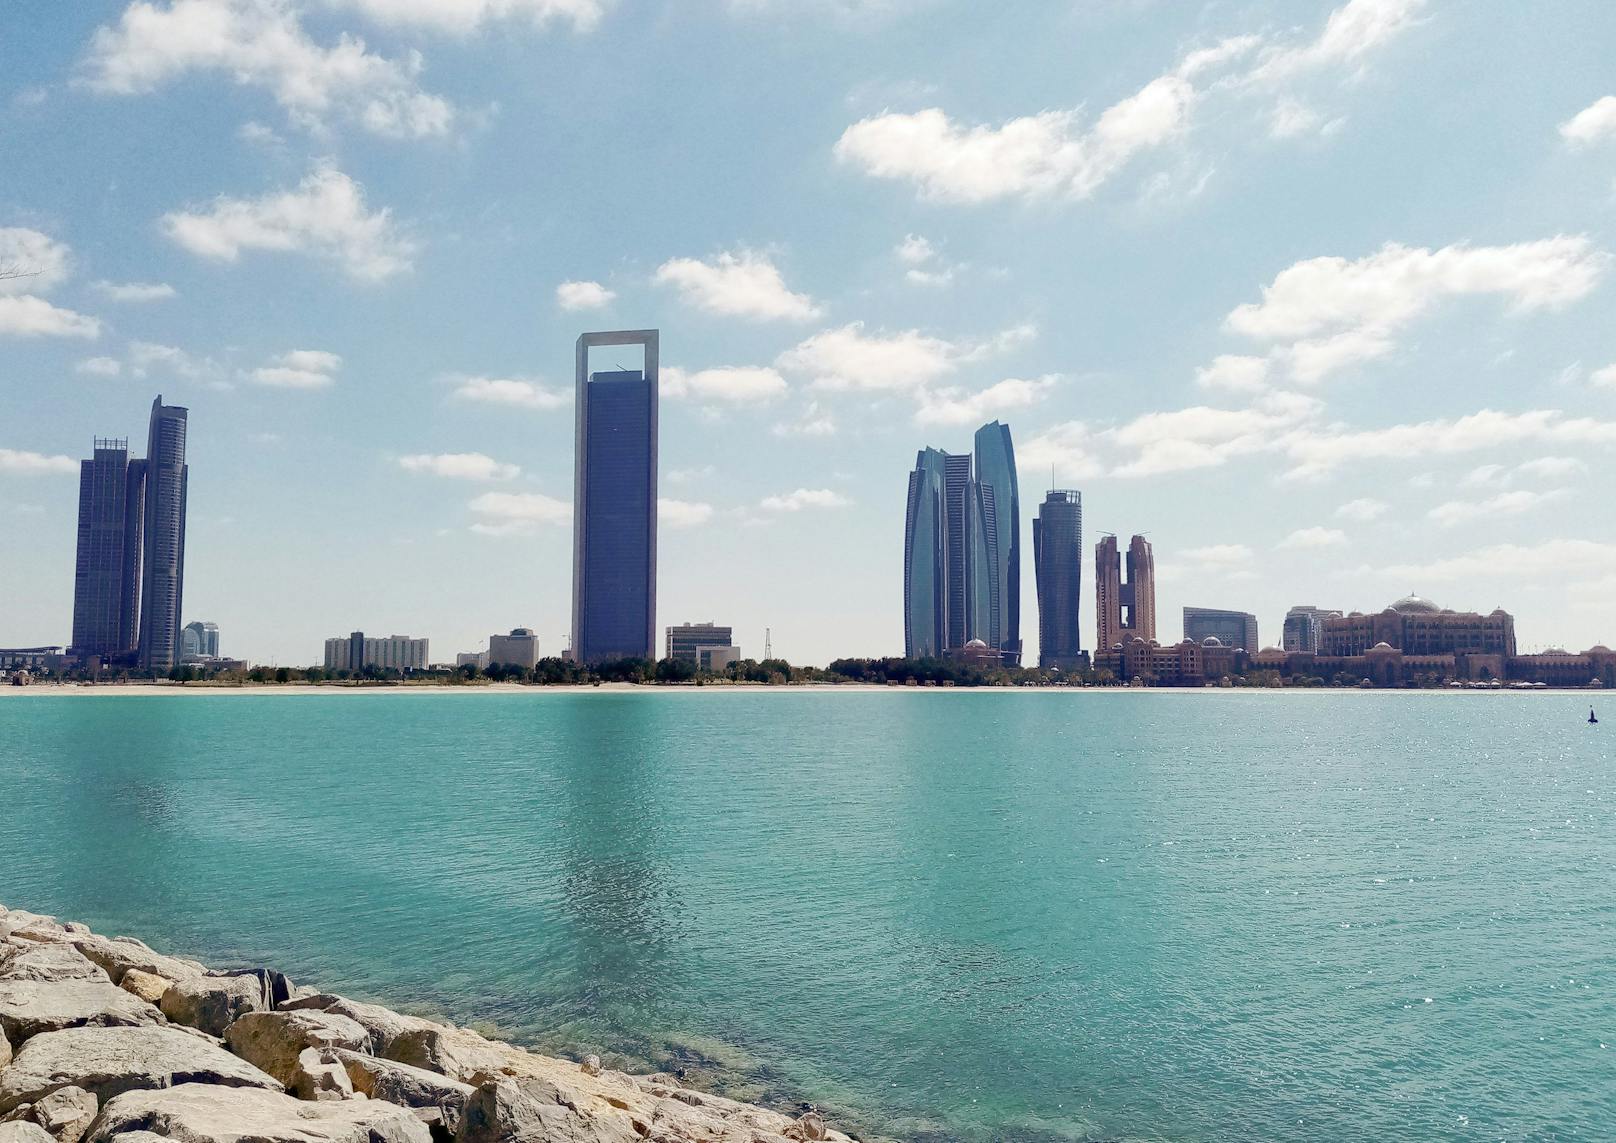 Mit einem blauen Auge wird Abu Dhabi, die Hauptstadt der Vereinigten Arabischen Emirate, davonkommen.